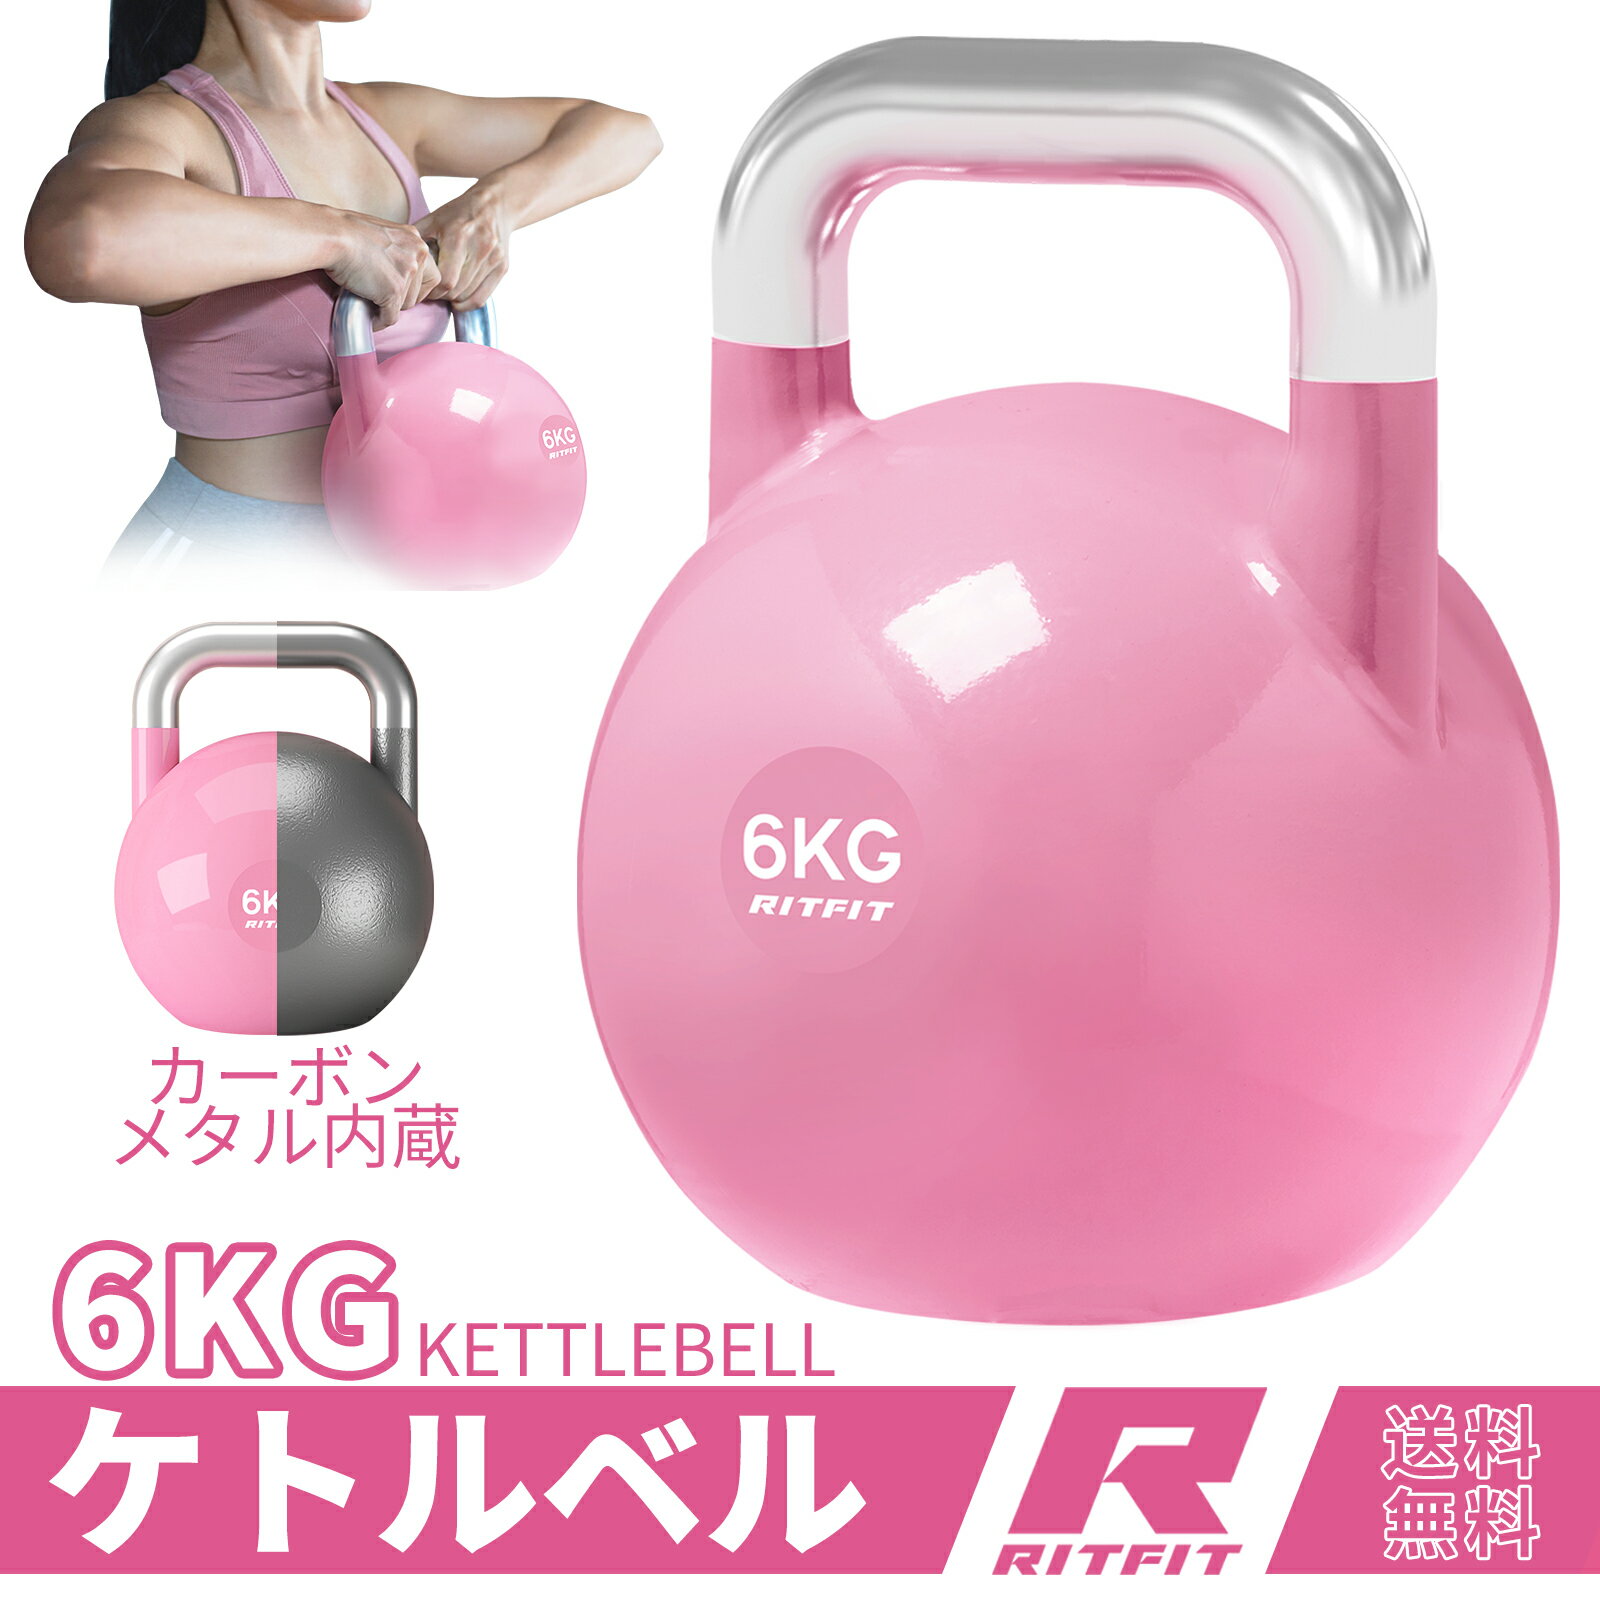 RITFIT ケトルベル ピンク色 6KG カラービニールコーティング ダンベル代わり 頑丈耐用 有酸素運動 背筋 上腕二頭筋 体幹強化 女性 フィットネス カーボンスチール内蔵ハンドル スナッチ スイング ダンベル代わり